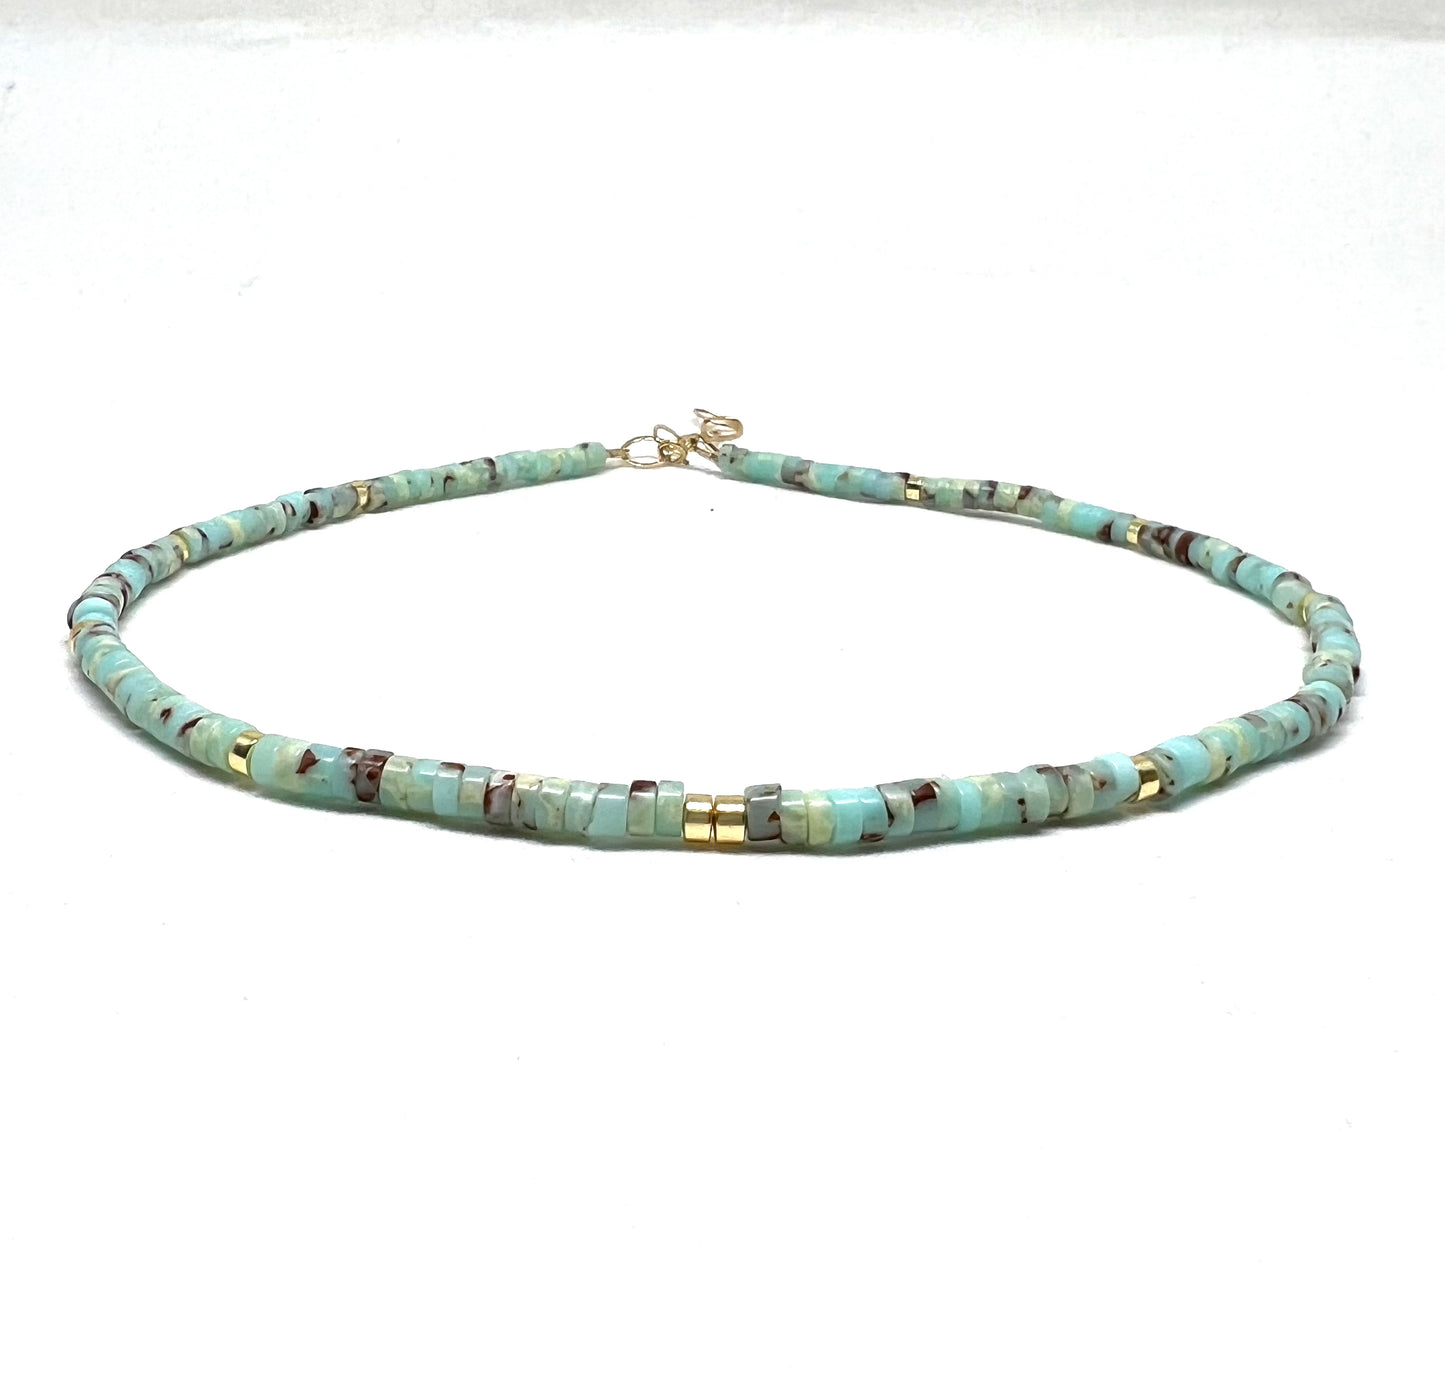 Aqua terra Jasper necklace